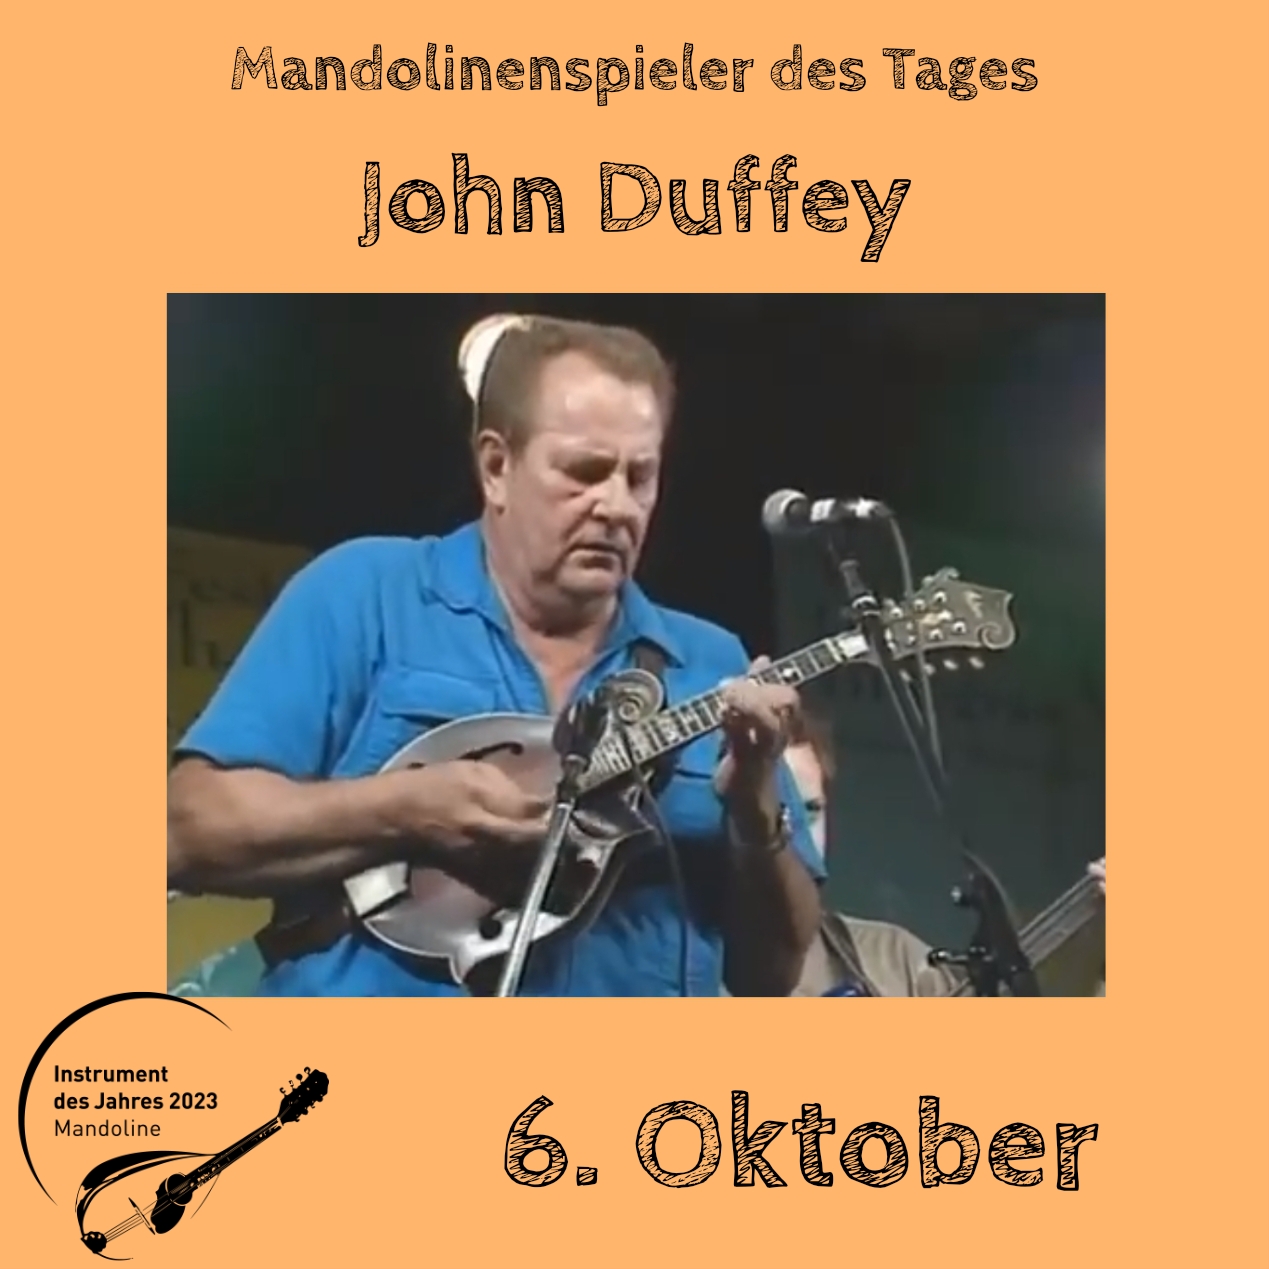 6. Oktober - John Duffey Instrument des Jahres 2023 Mandolinenspieler Mandolinenspielerin des Tages